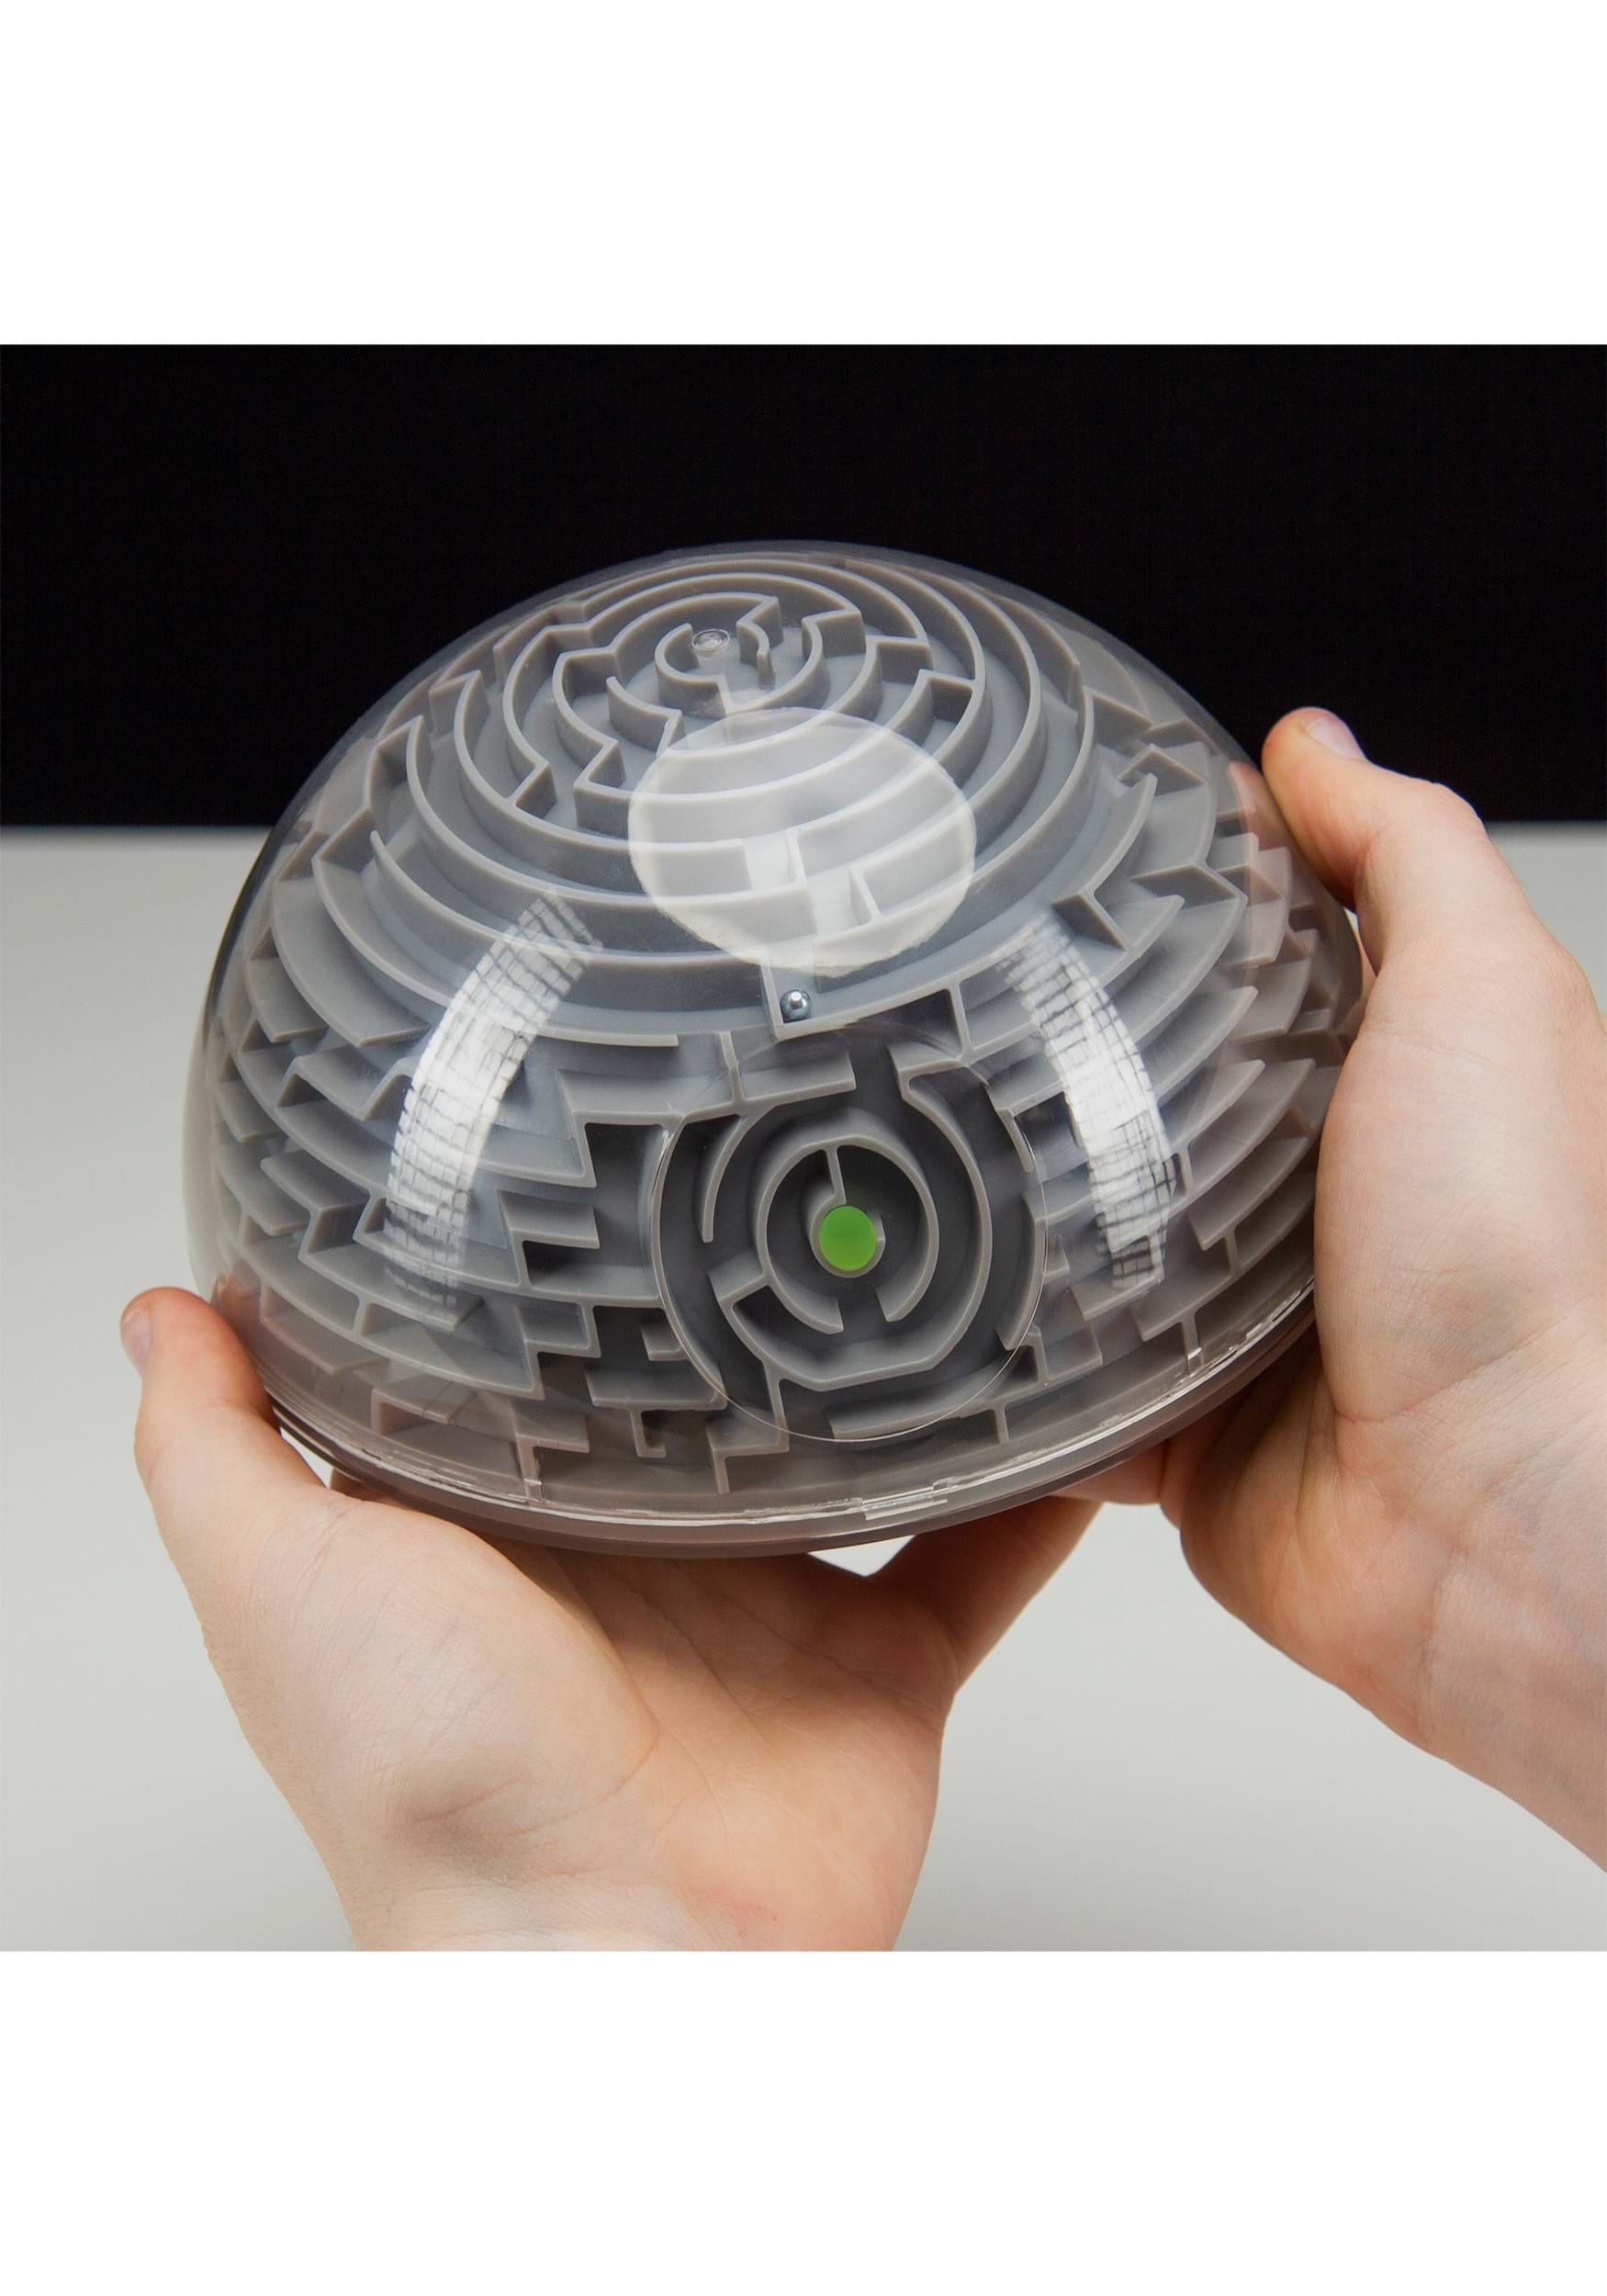 Ball Bearing Death Star Maze , Star Wars Gifts